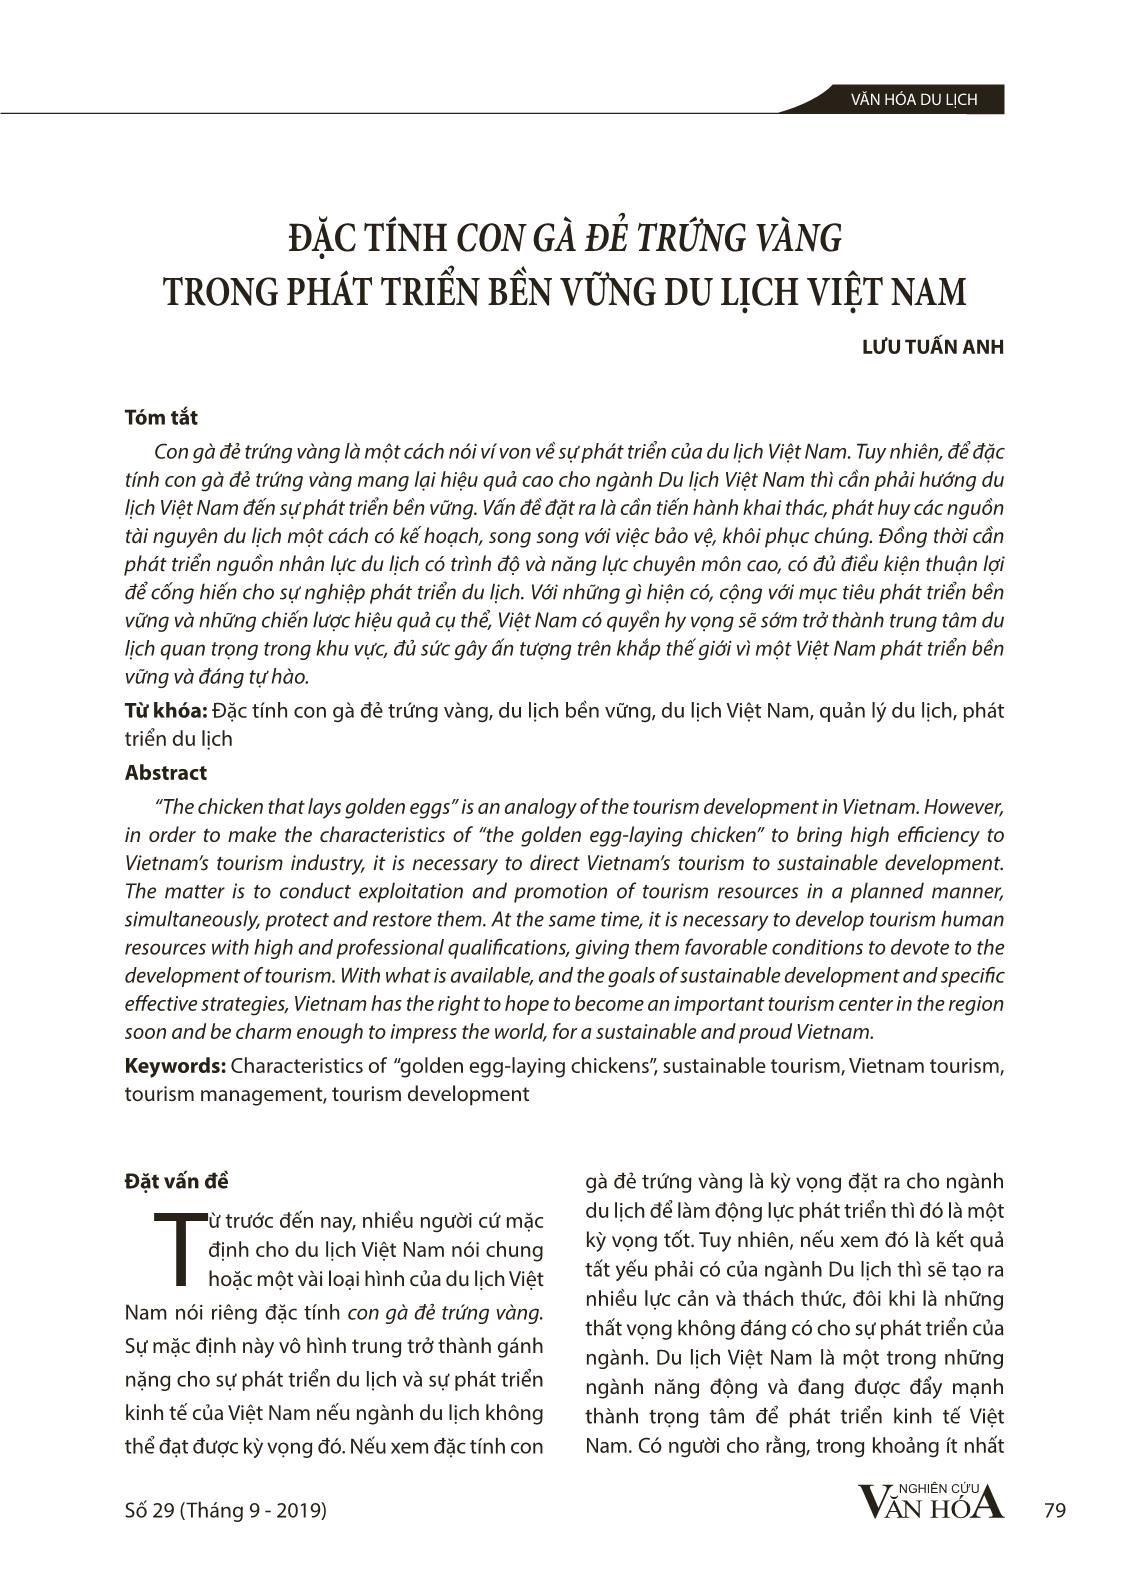 Đặc tính con gà đẻ trứng vàng trong phát triển bền vững du lịch Việt Nam trang 1